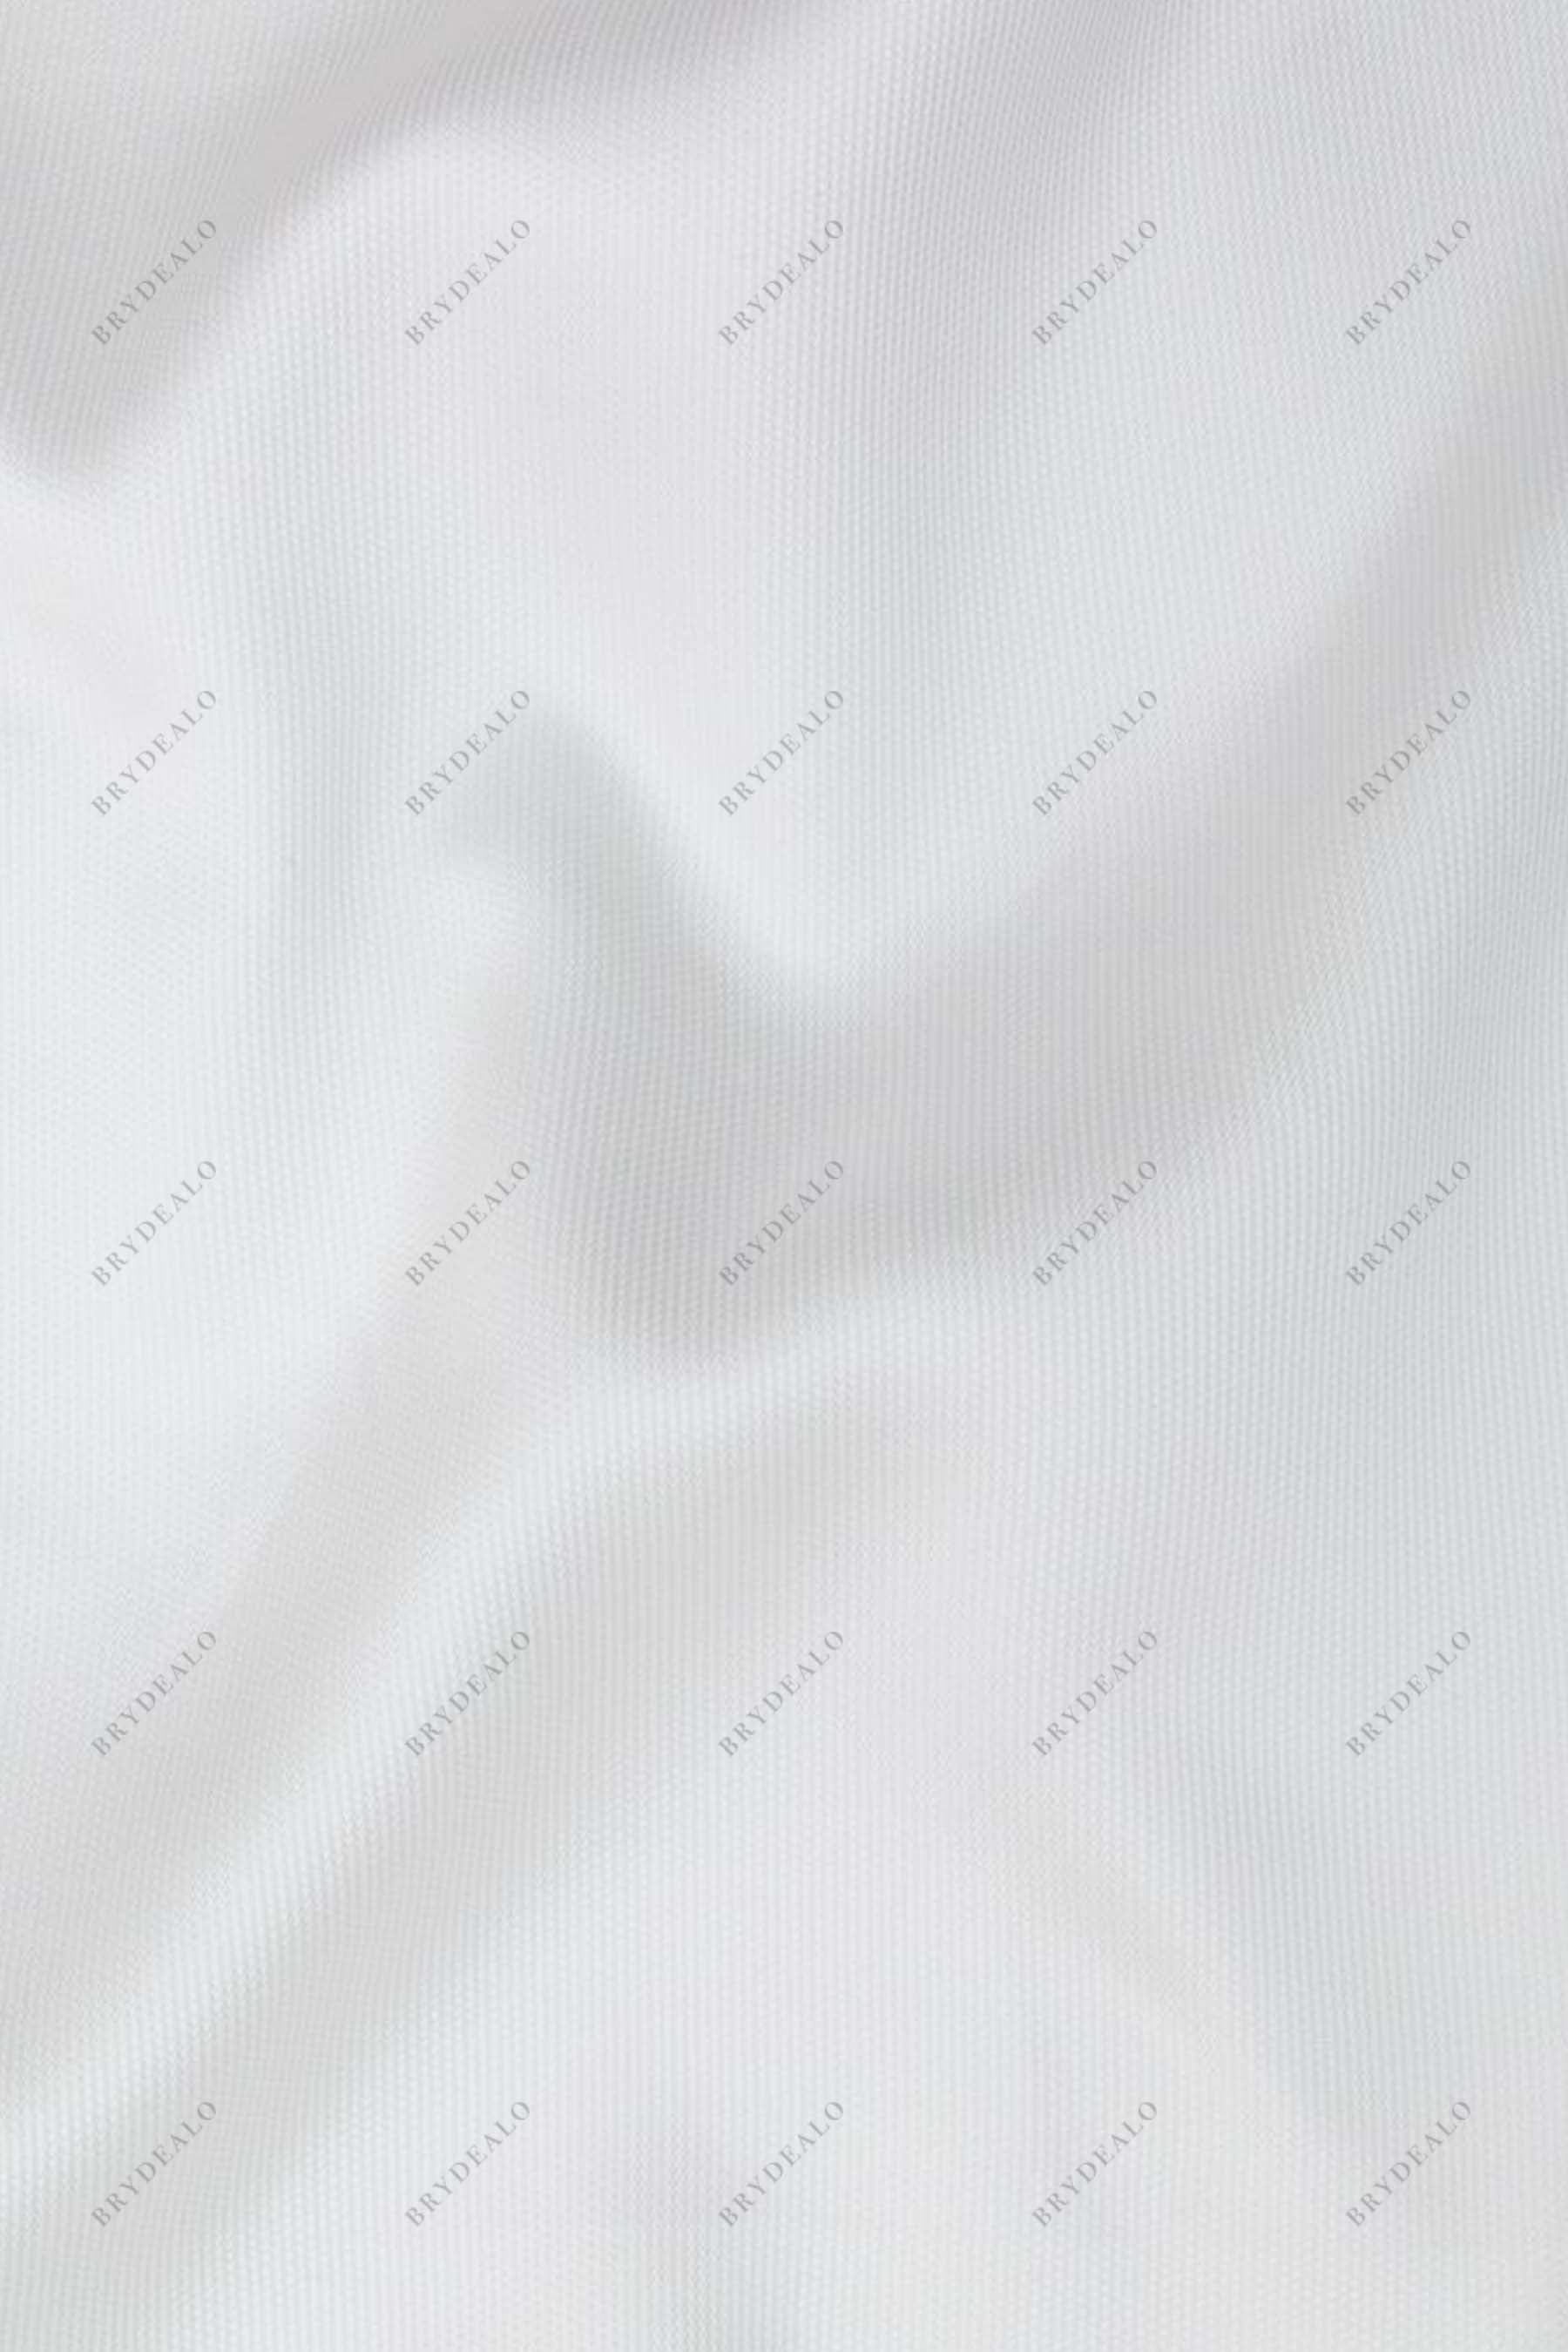 Light Ivory High Quality Mikado Fabric